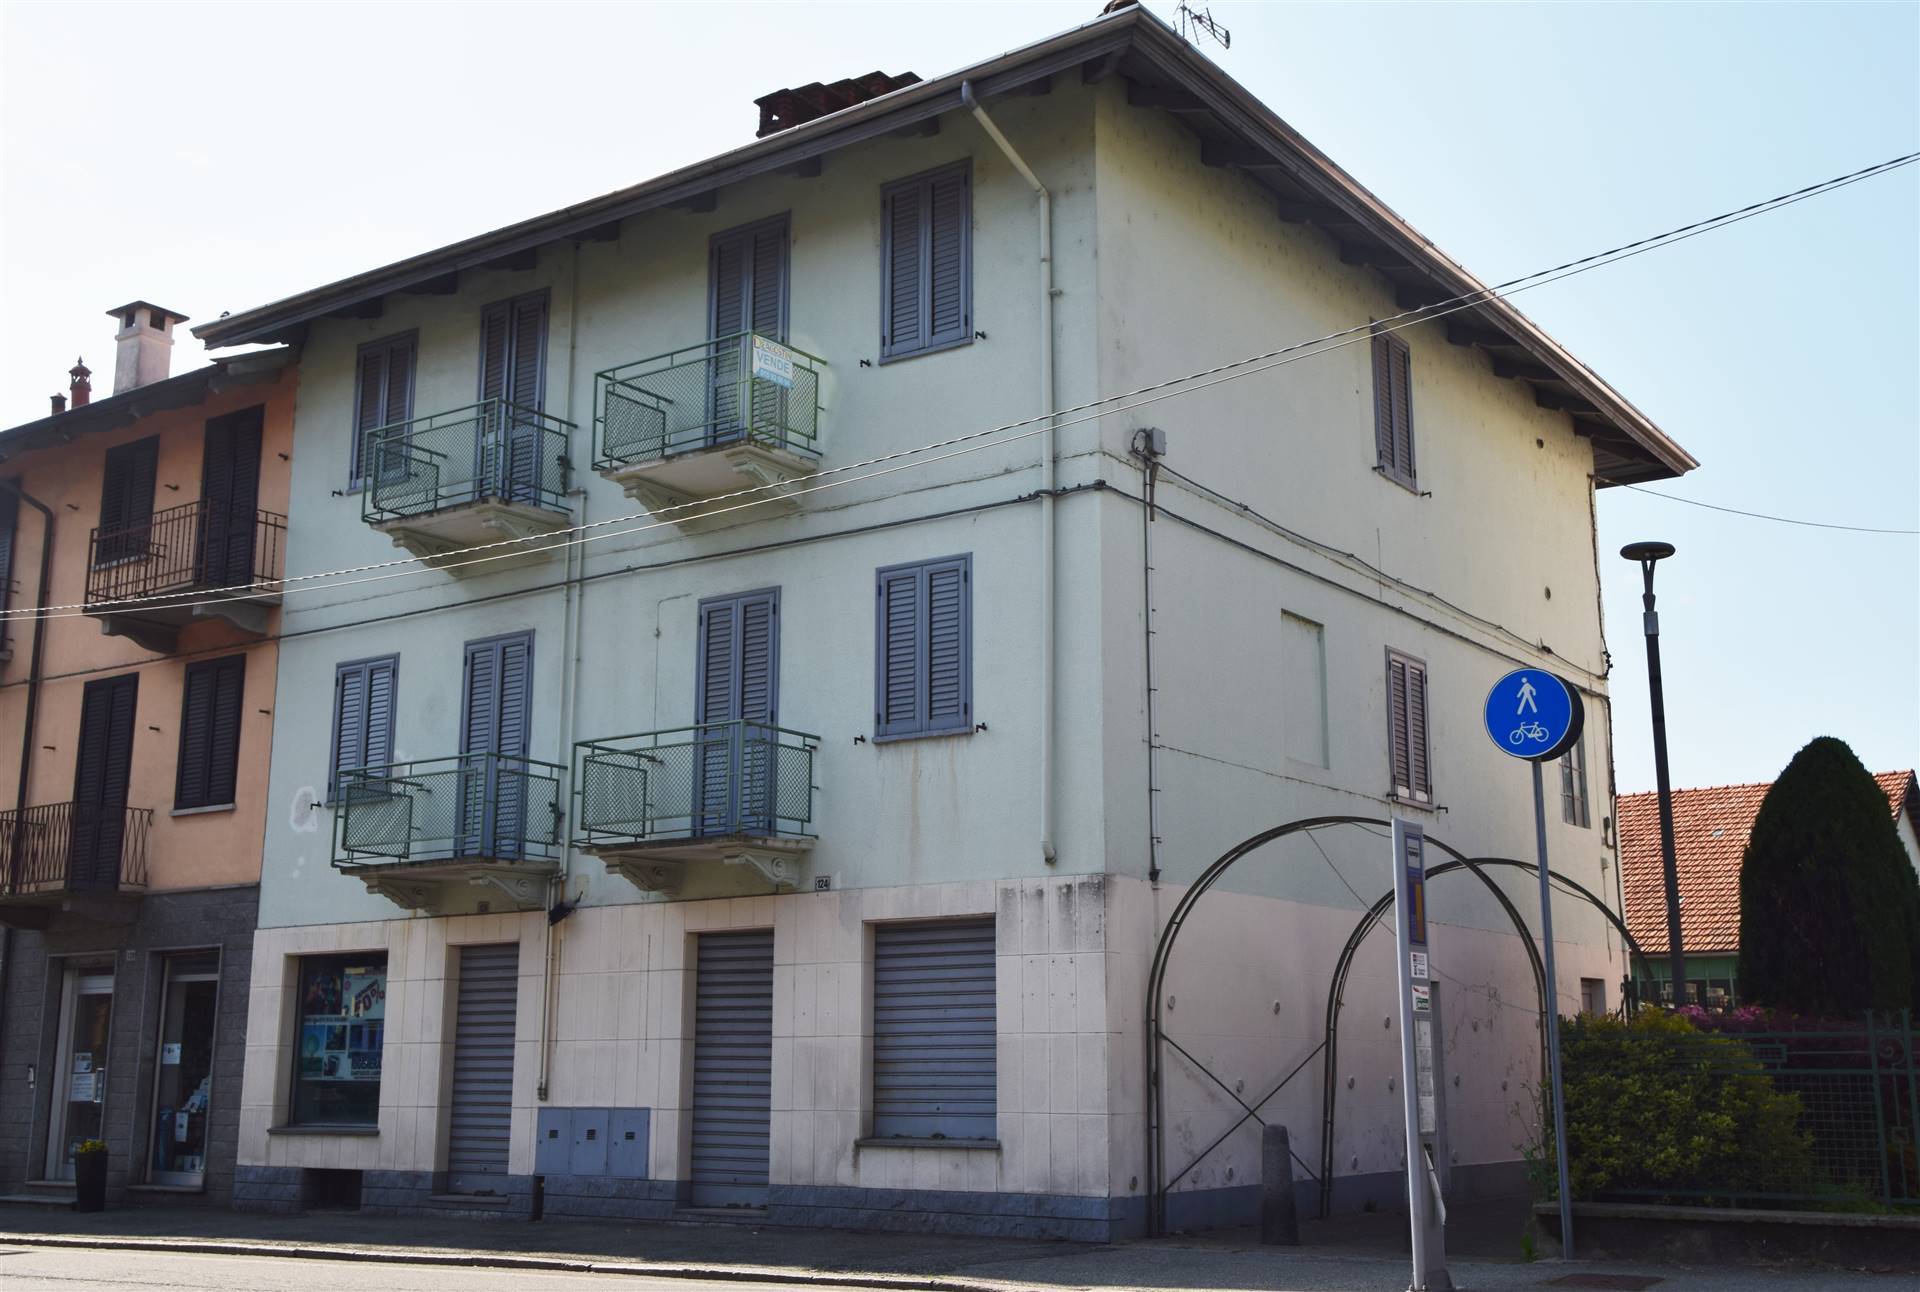 Negozio / Locale in vendita a Vigliano Biellese, 2 locali, prezzo € 15.000 | CambioCasa.it